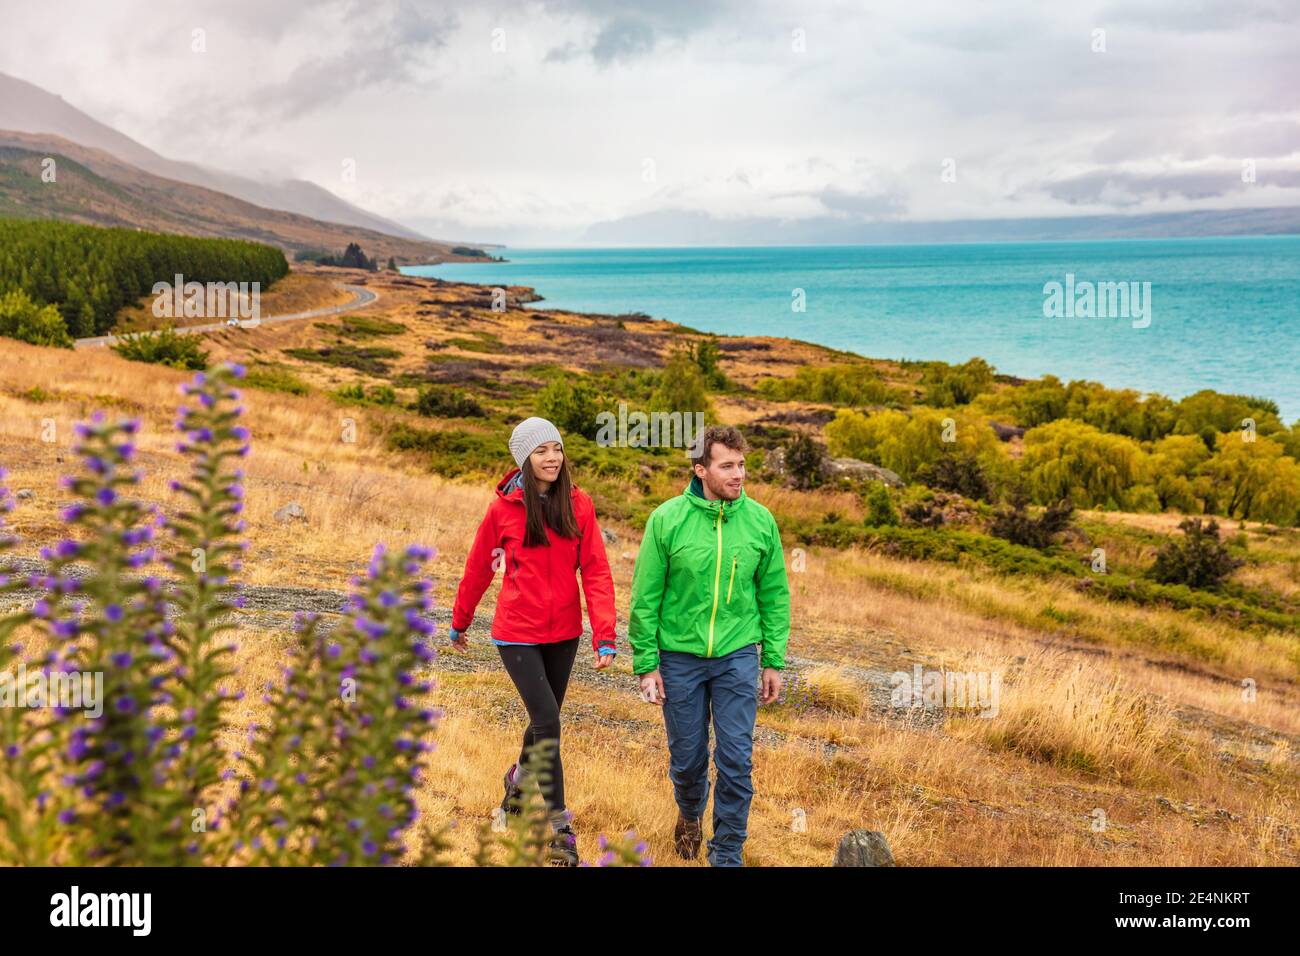 Neuseeland Reise - Paar Touristen Wandern in der Natur mit Blick auf den See Pukaki in der Nähe von Aoraki aka Mount Cook bei Peter's Lookout, ein berühmter Tourist Stockfoto